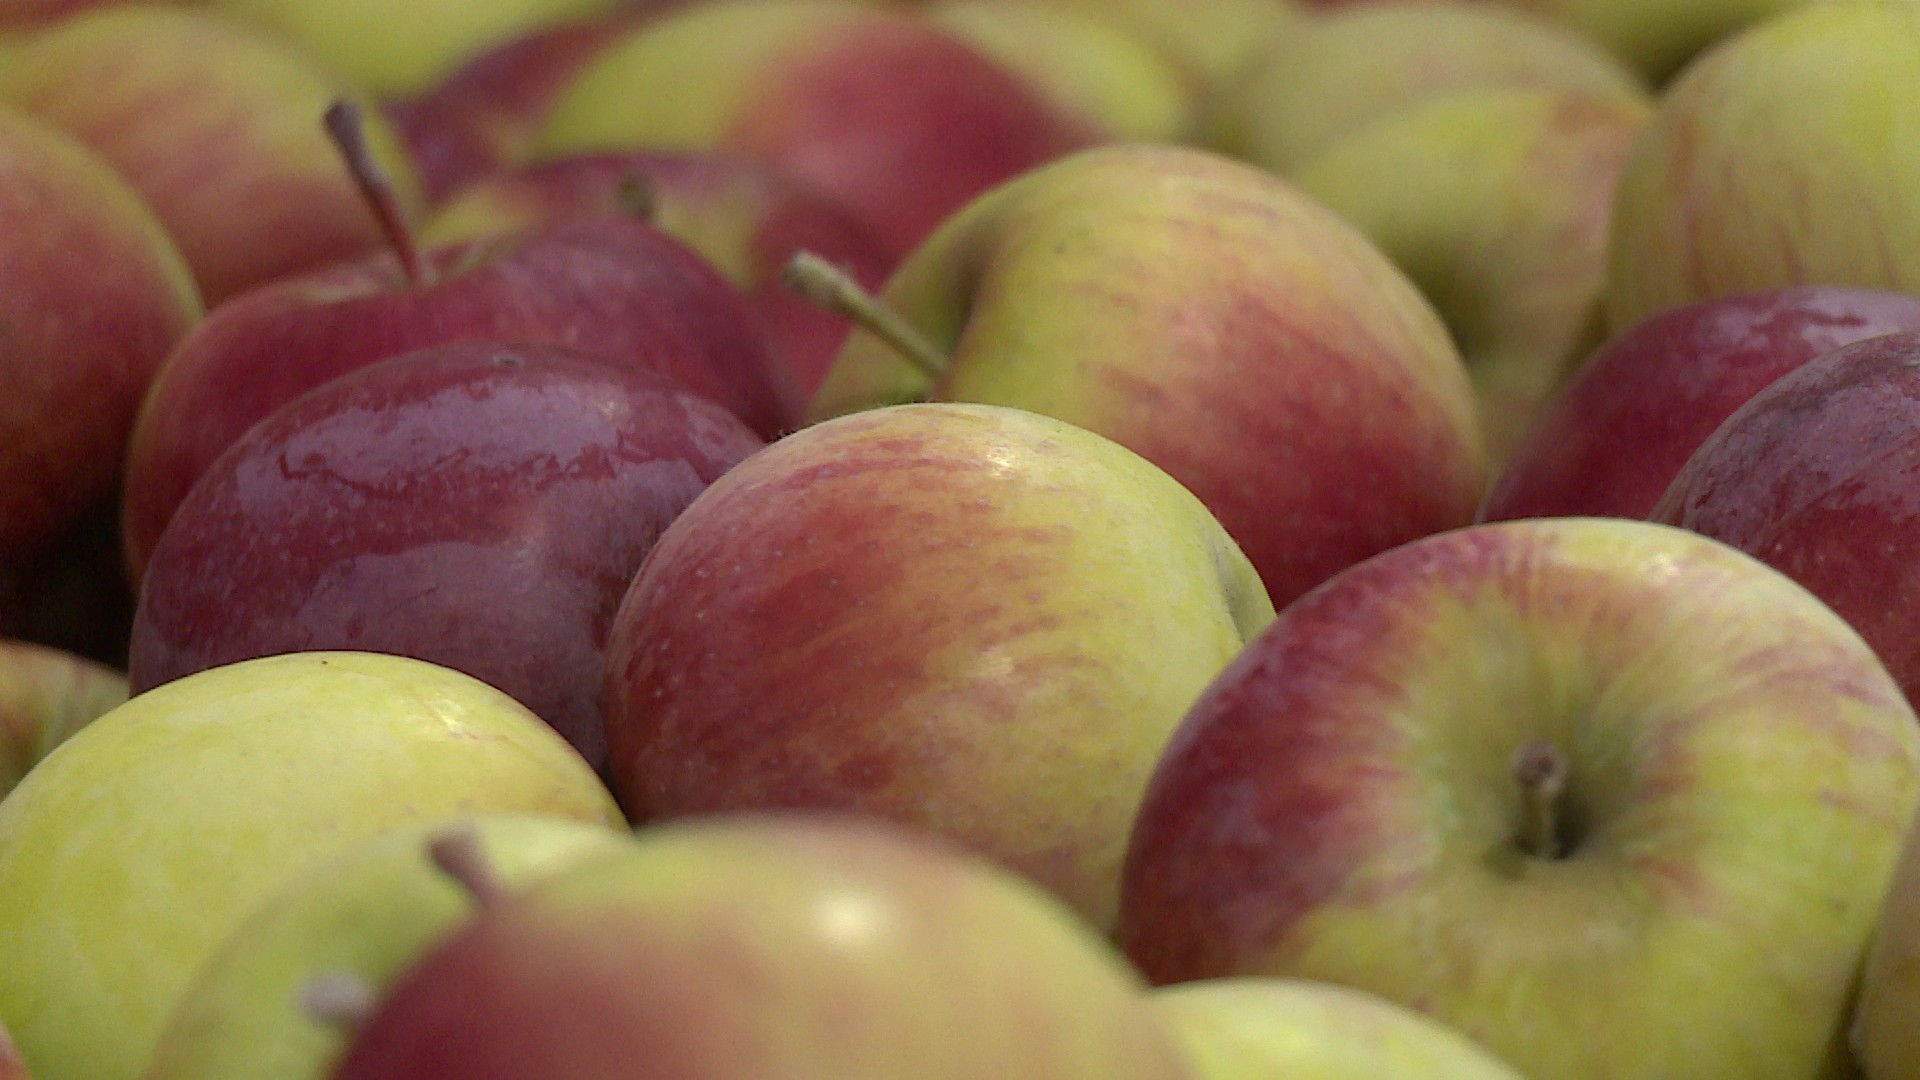 На вкус и цвет: выбираем идеальные яблоки для сада